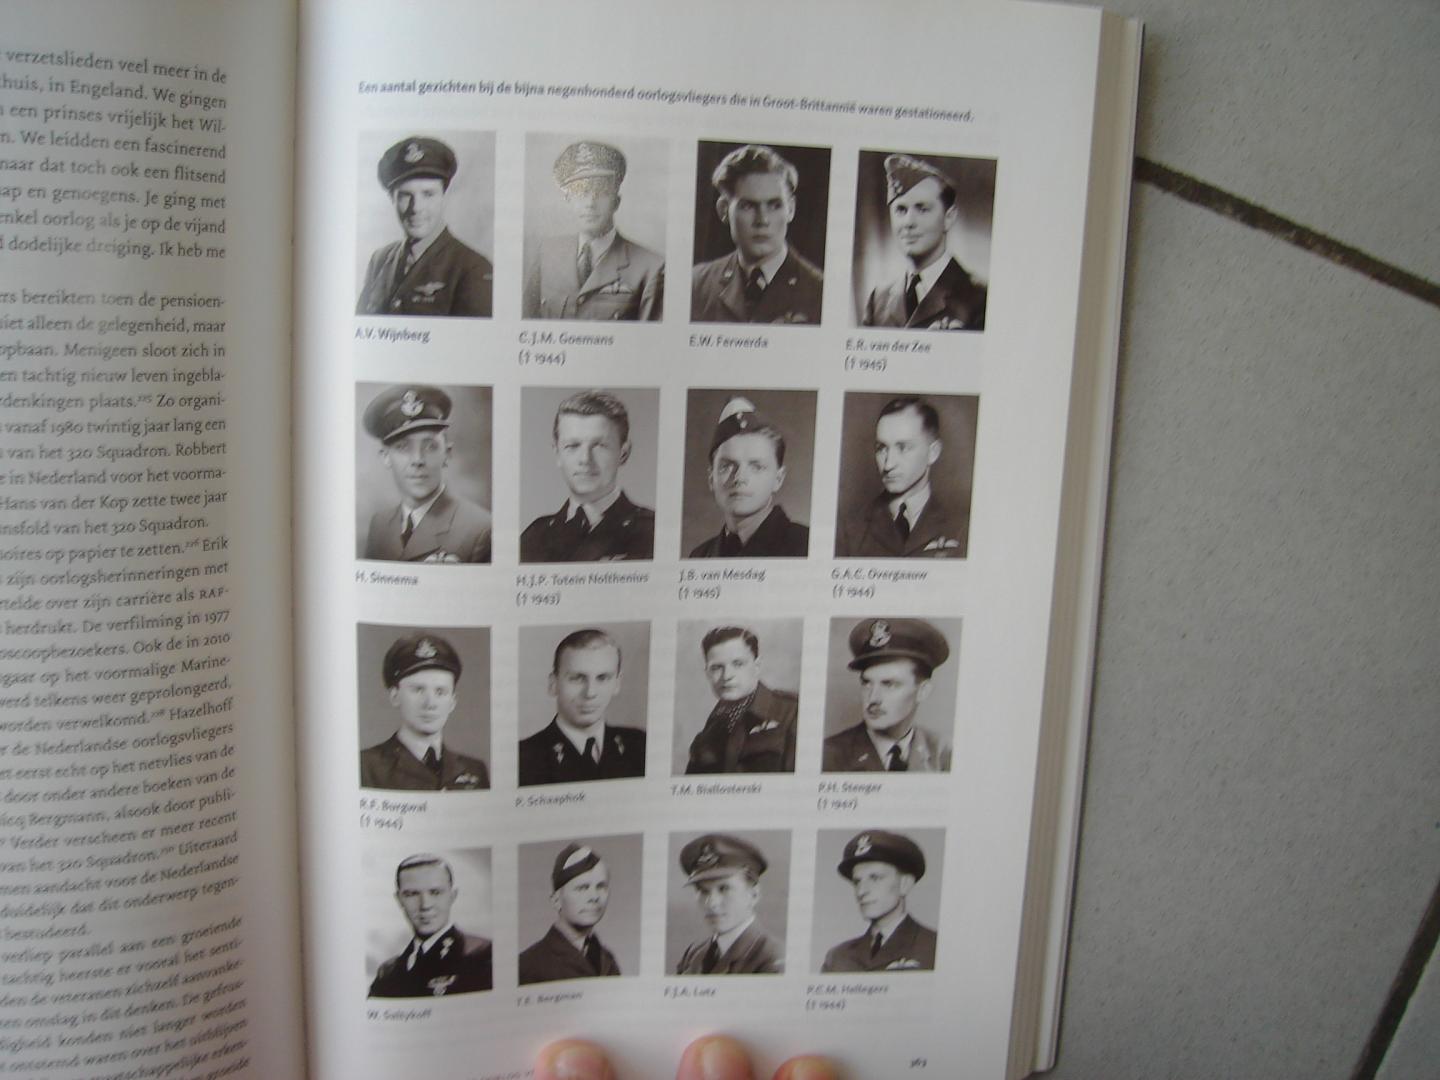 Erwin van Loo - Eenige wakkere jongens.Nederlandse oologsvliegers in de Britse luchtstrijdkrachten 1940 - 1945.